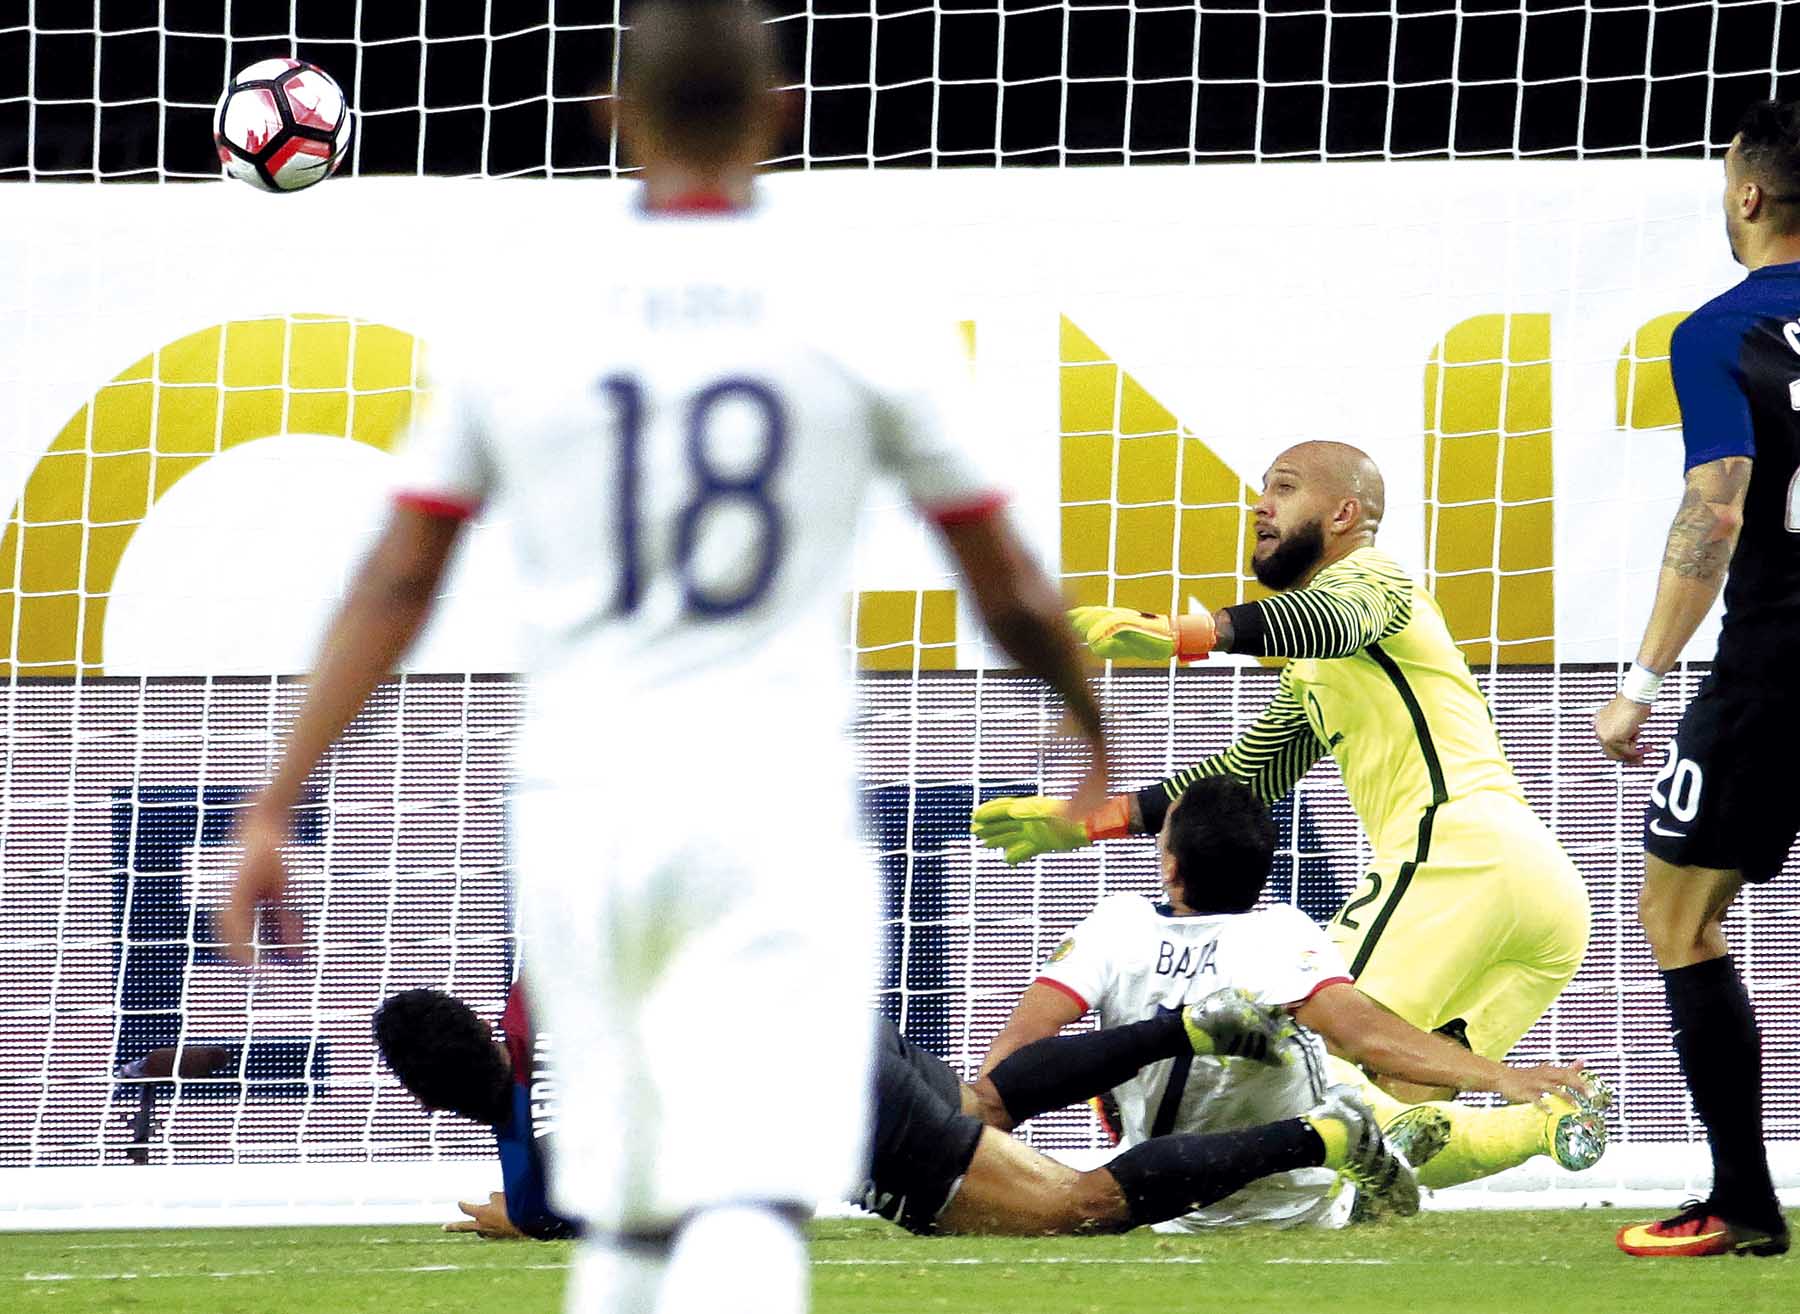 El gol del seleccionado colombiano fue obra de Carlos Bacca. Buen juego de James Rodríguez. Acción de juego del partido por el tercer puesto de la Copa América.